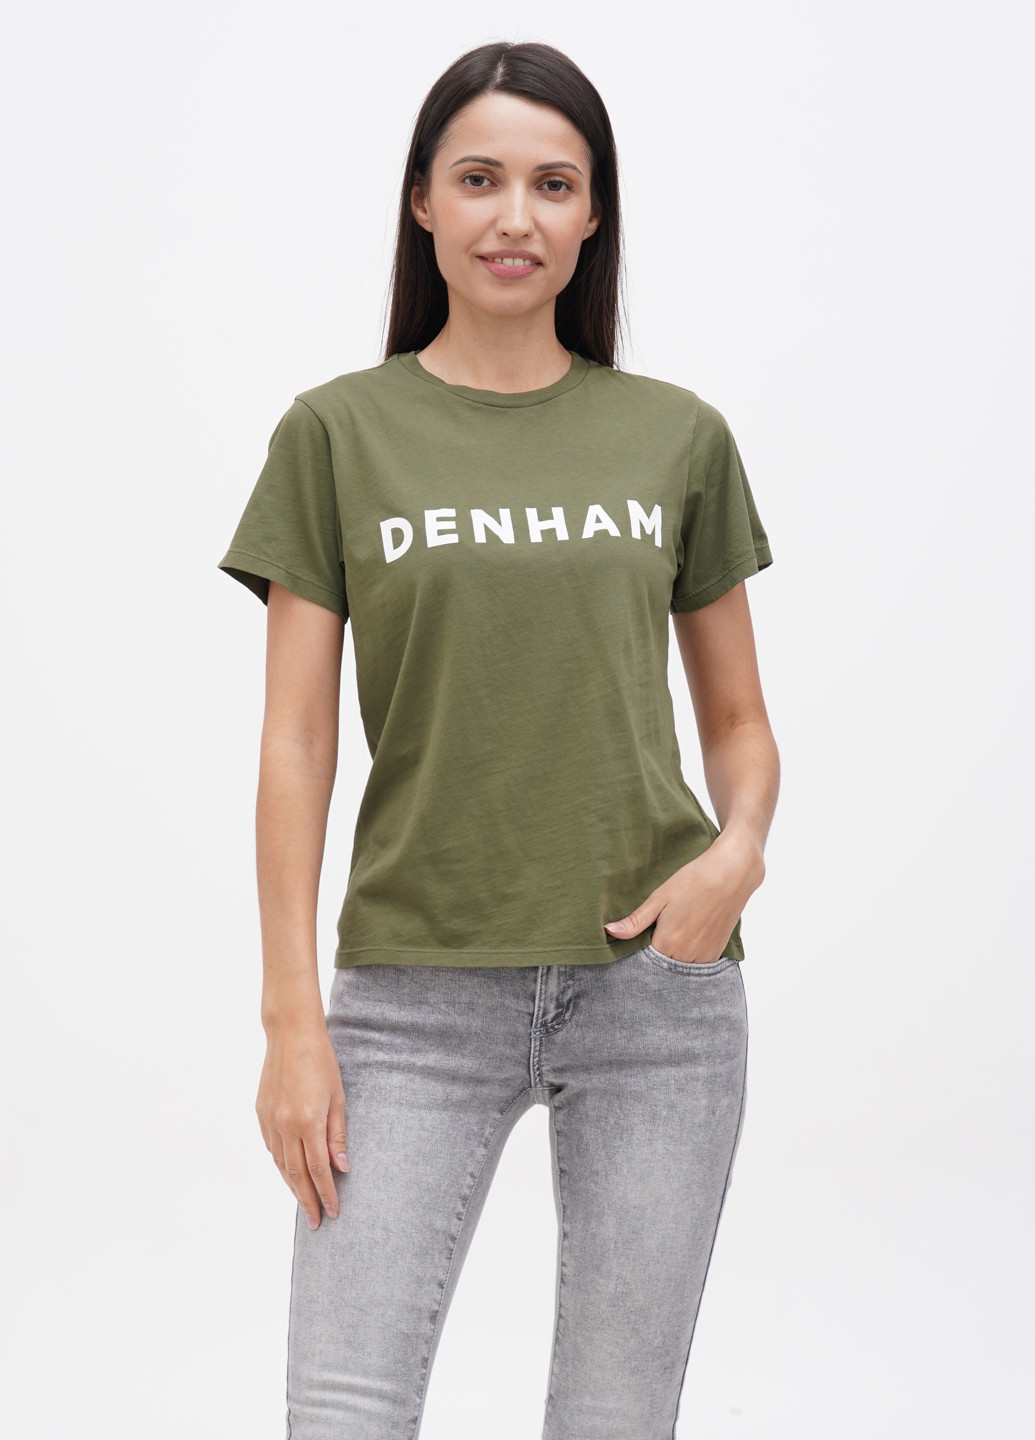 Хаки (оливковая) летняя футболка Denham